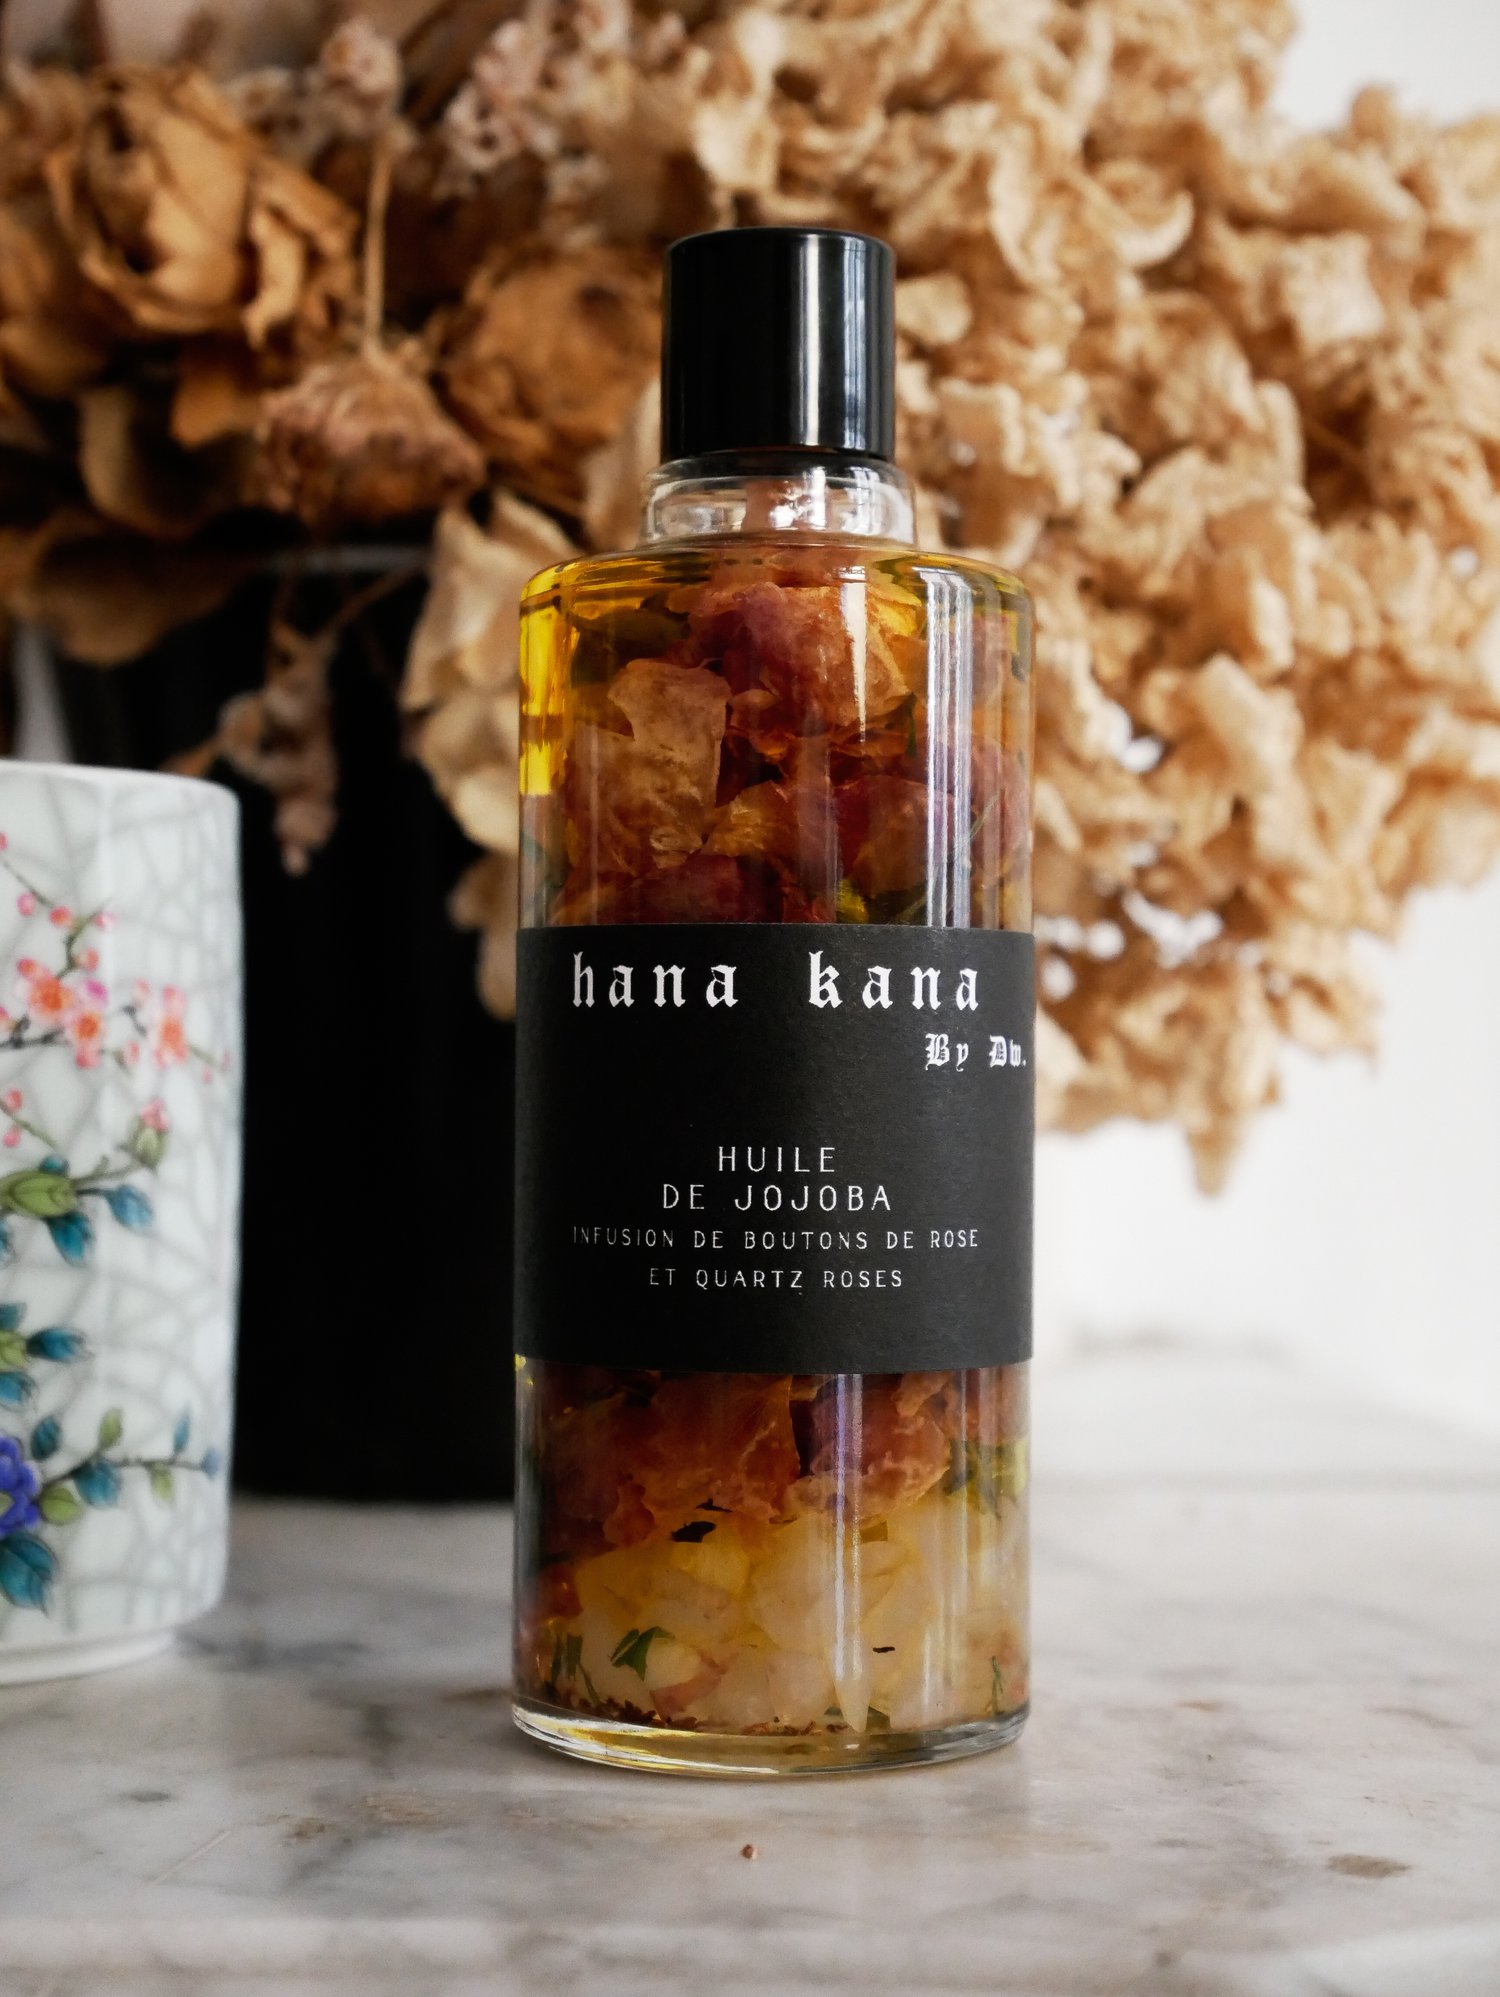 huile de jojoba aux boutons de rose et quartz rose — Hana Kana